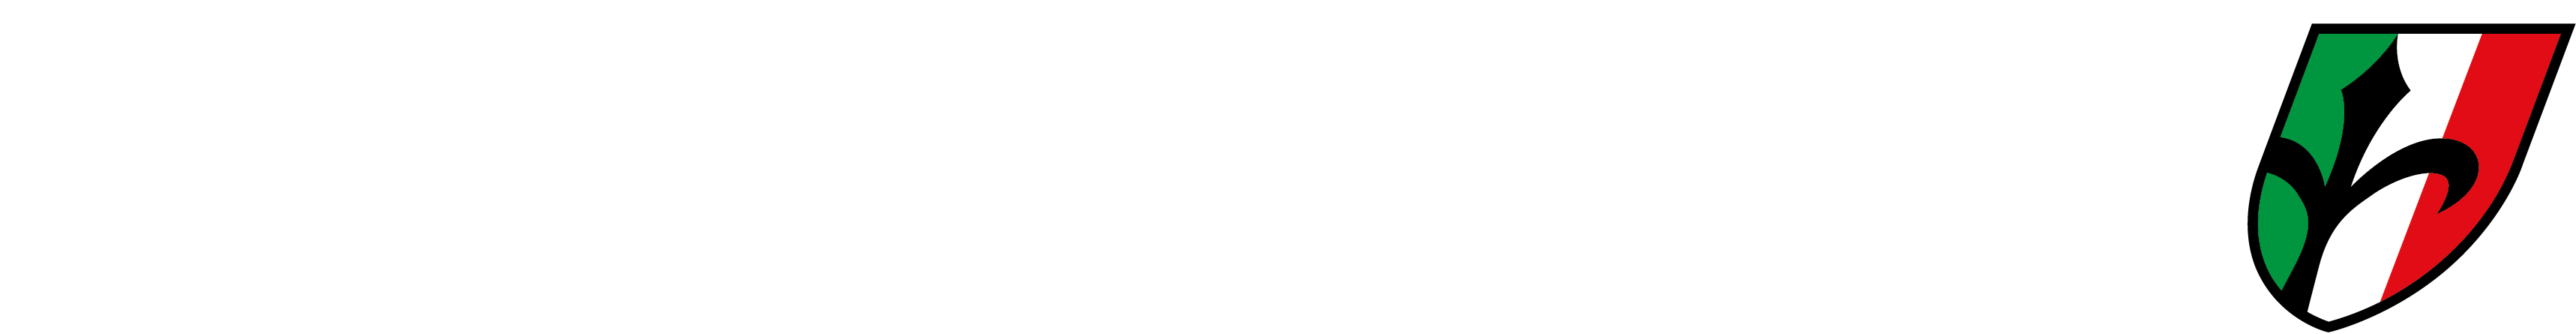 logo-wilier